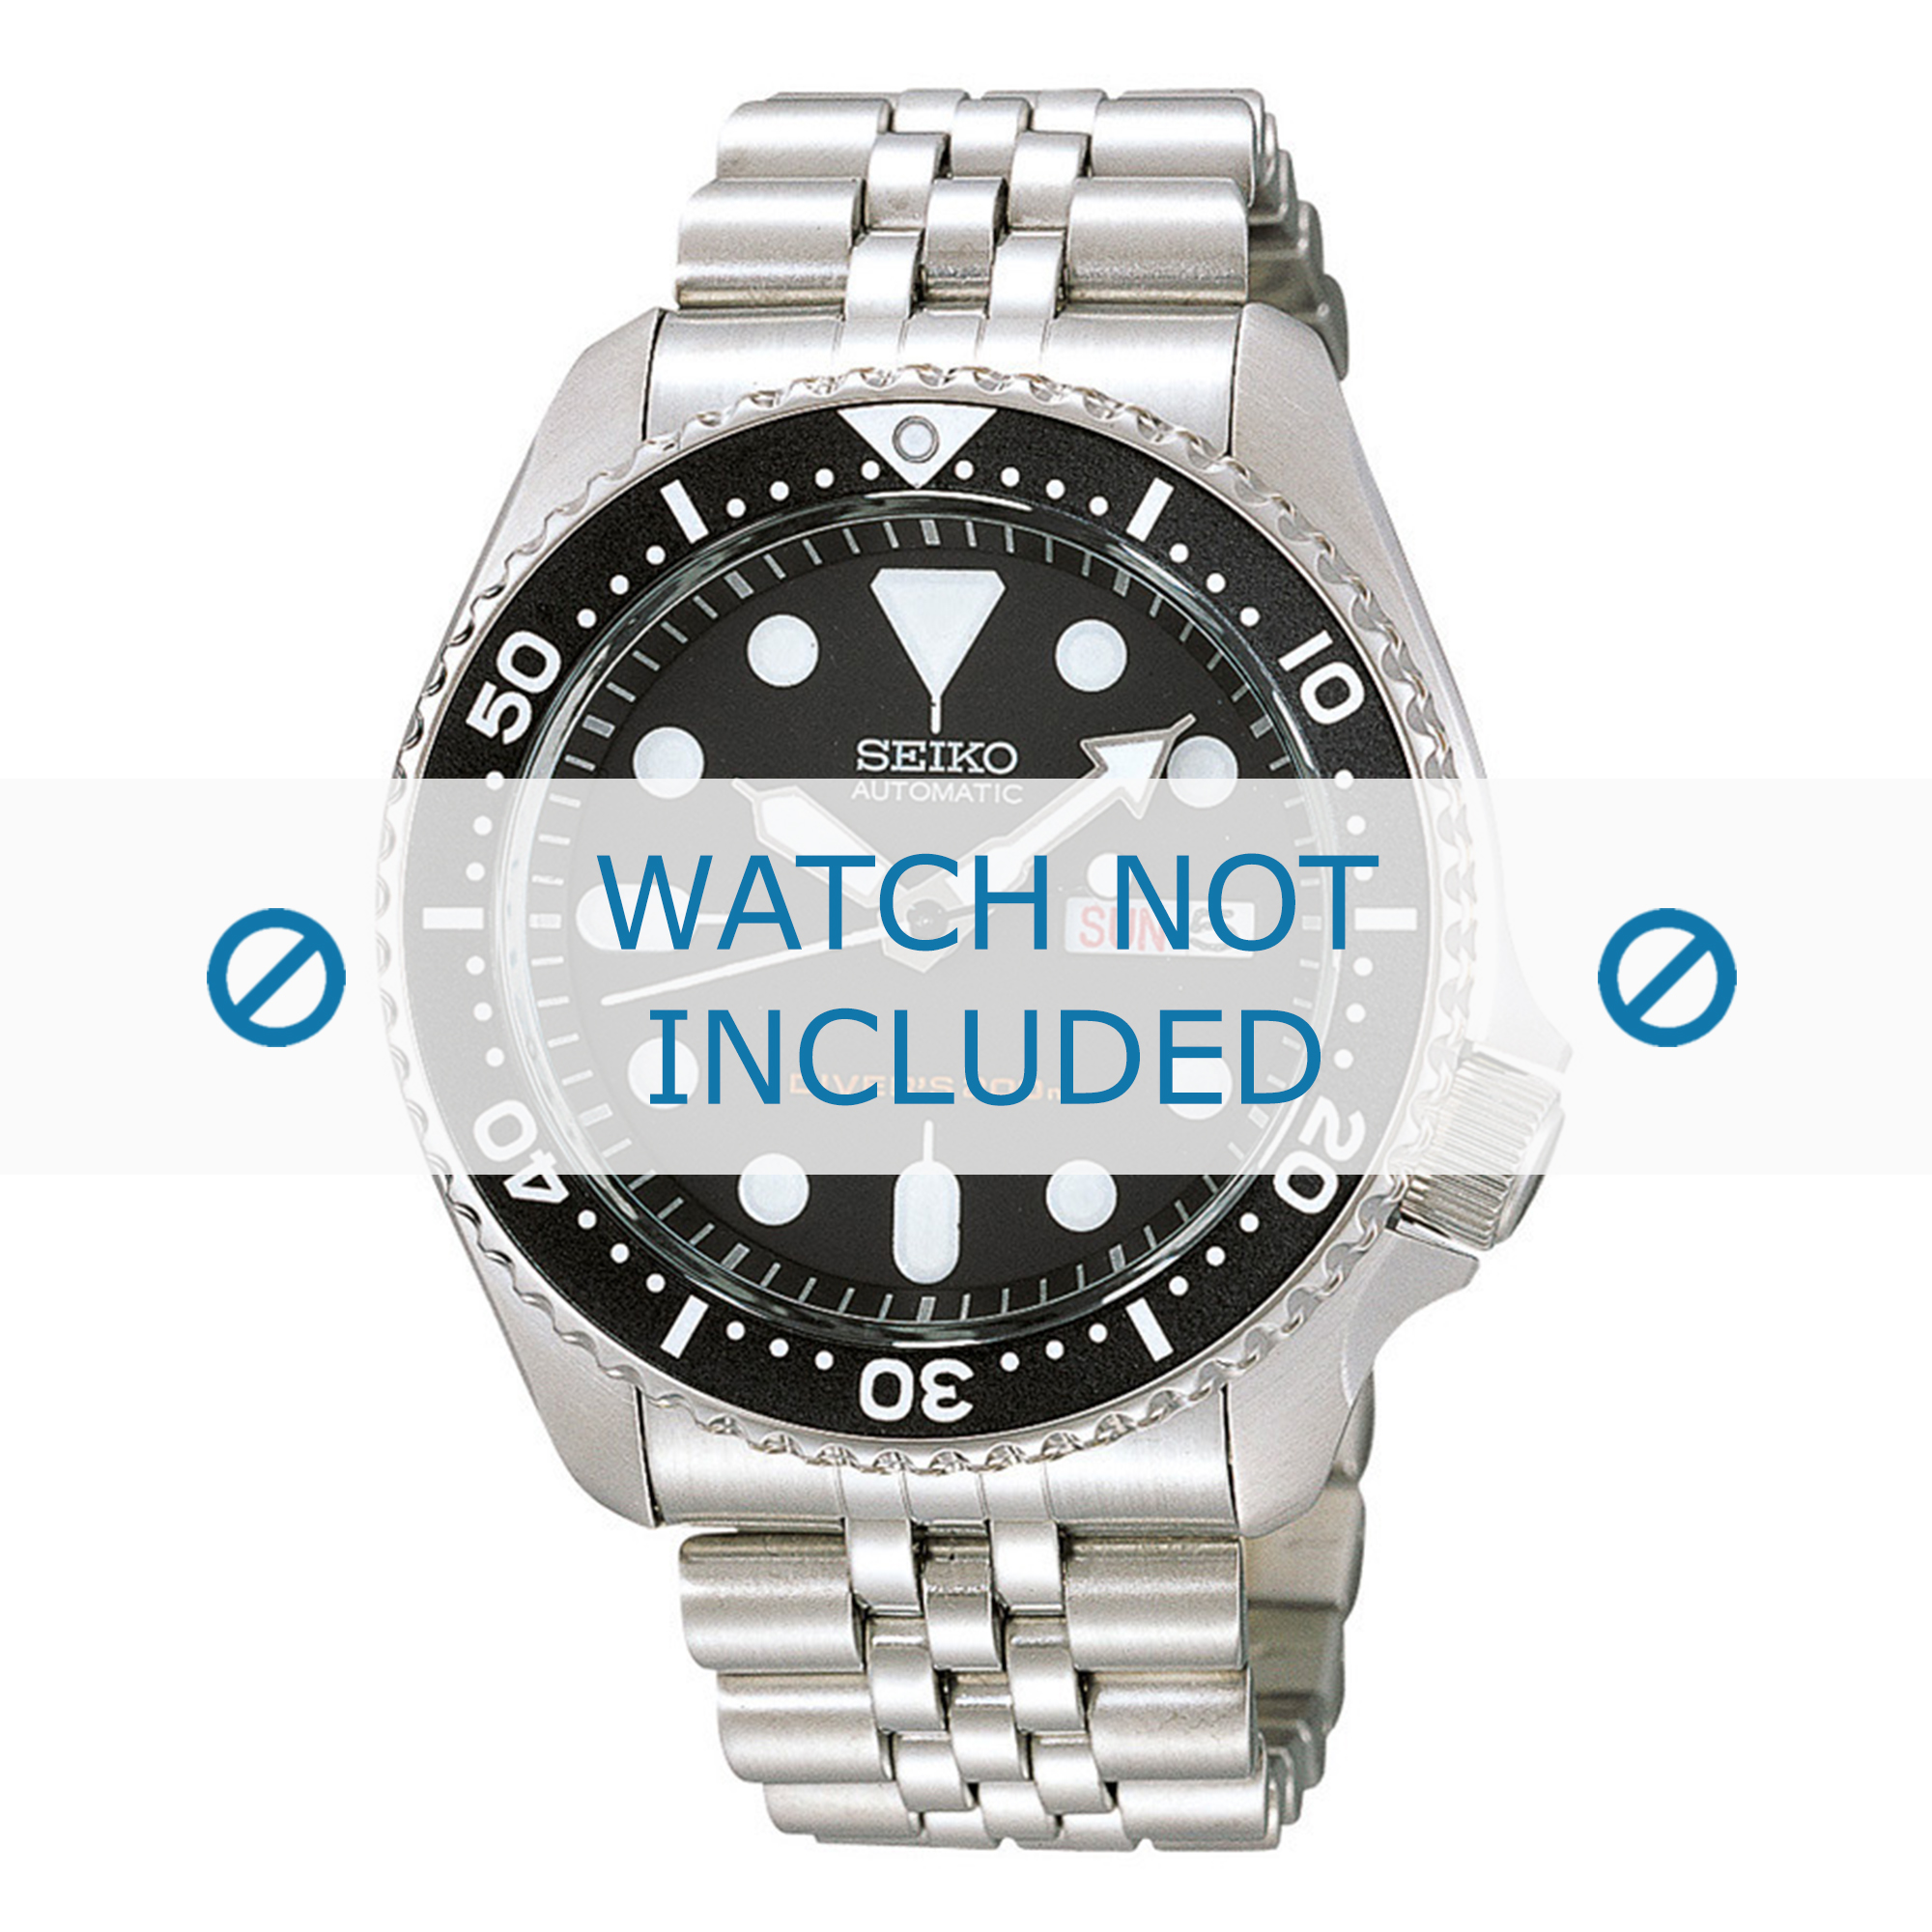 Watch strap Seiko 7S26-0020 / SKX007K2 / 44G1JZ Steel 22mm